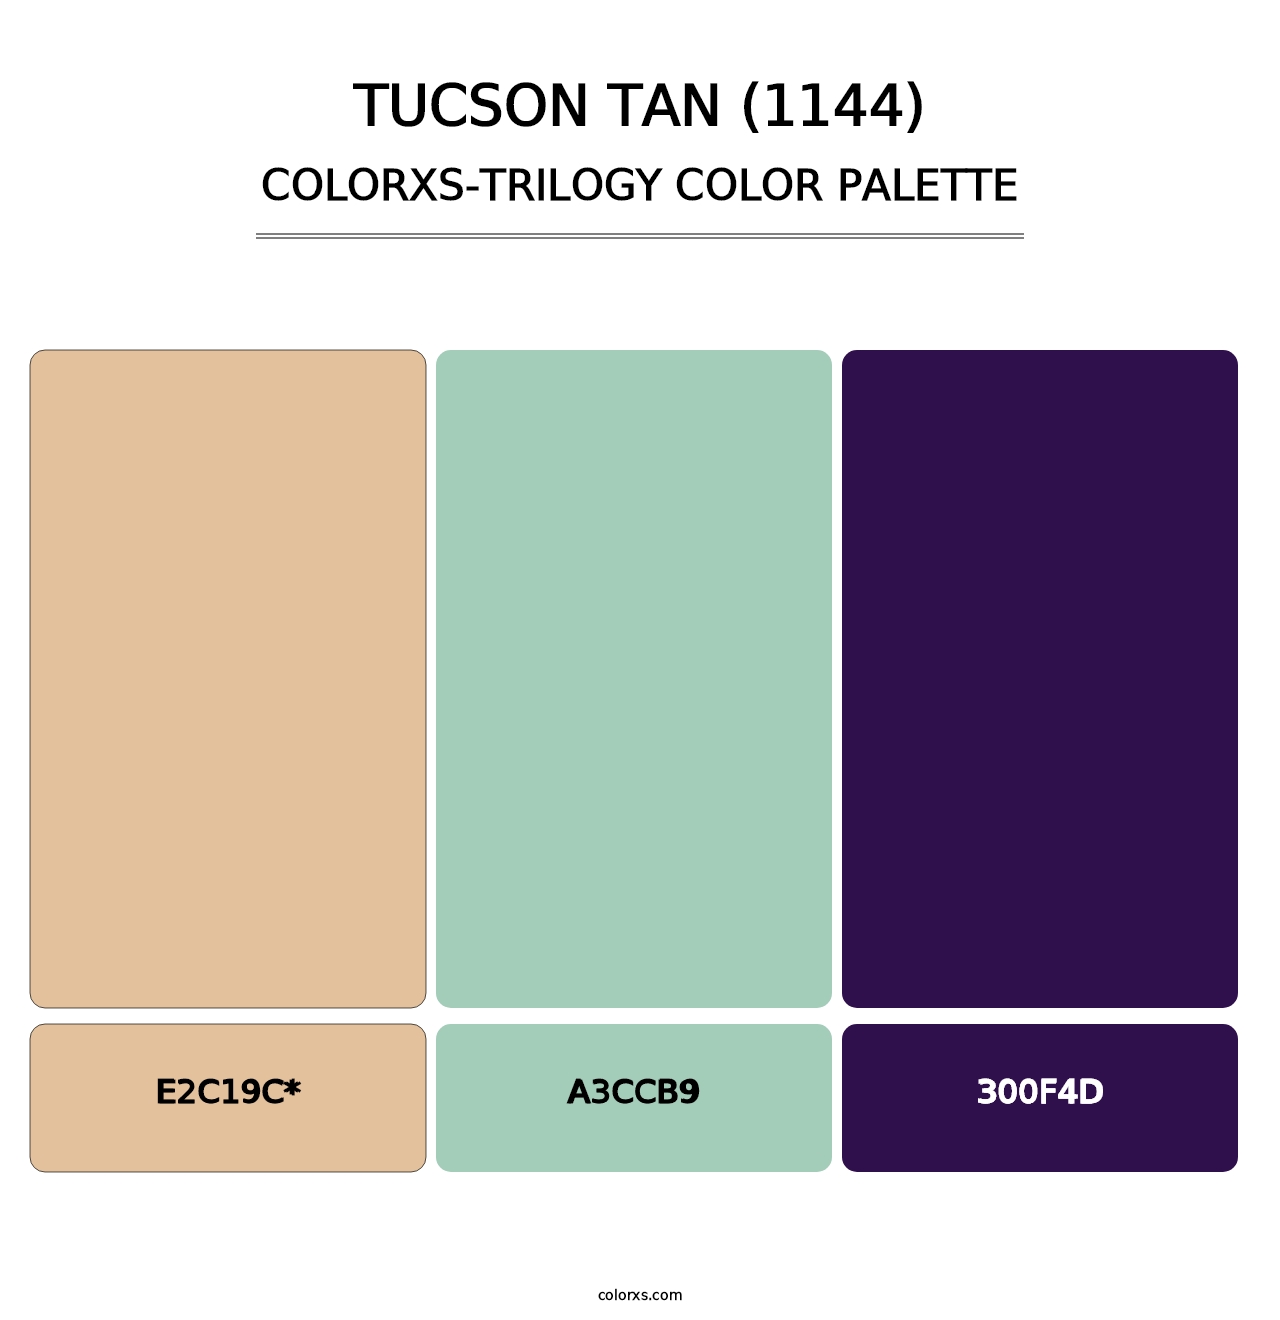 Tucson Tan (1144) - Colorxs Trilogy Palette